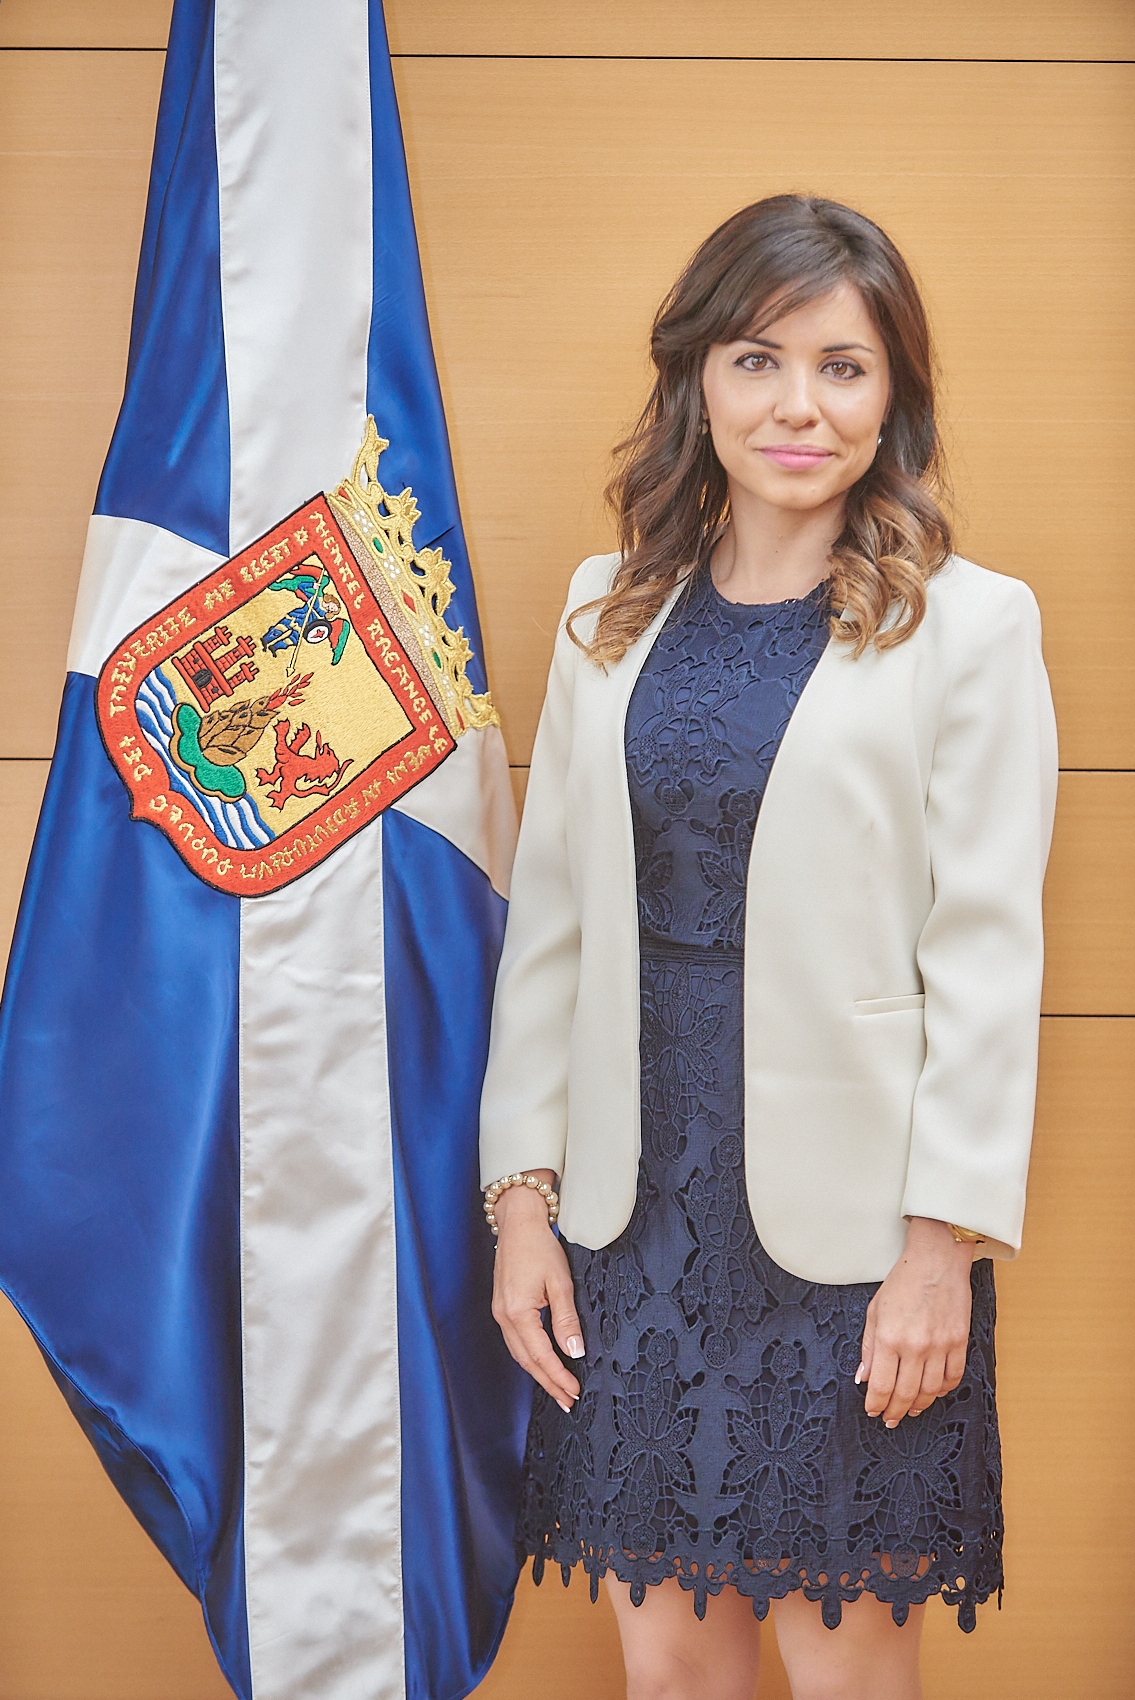 Sra. Dª Liskel Álvarez Domínguez